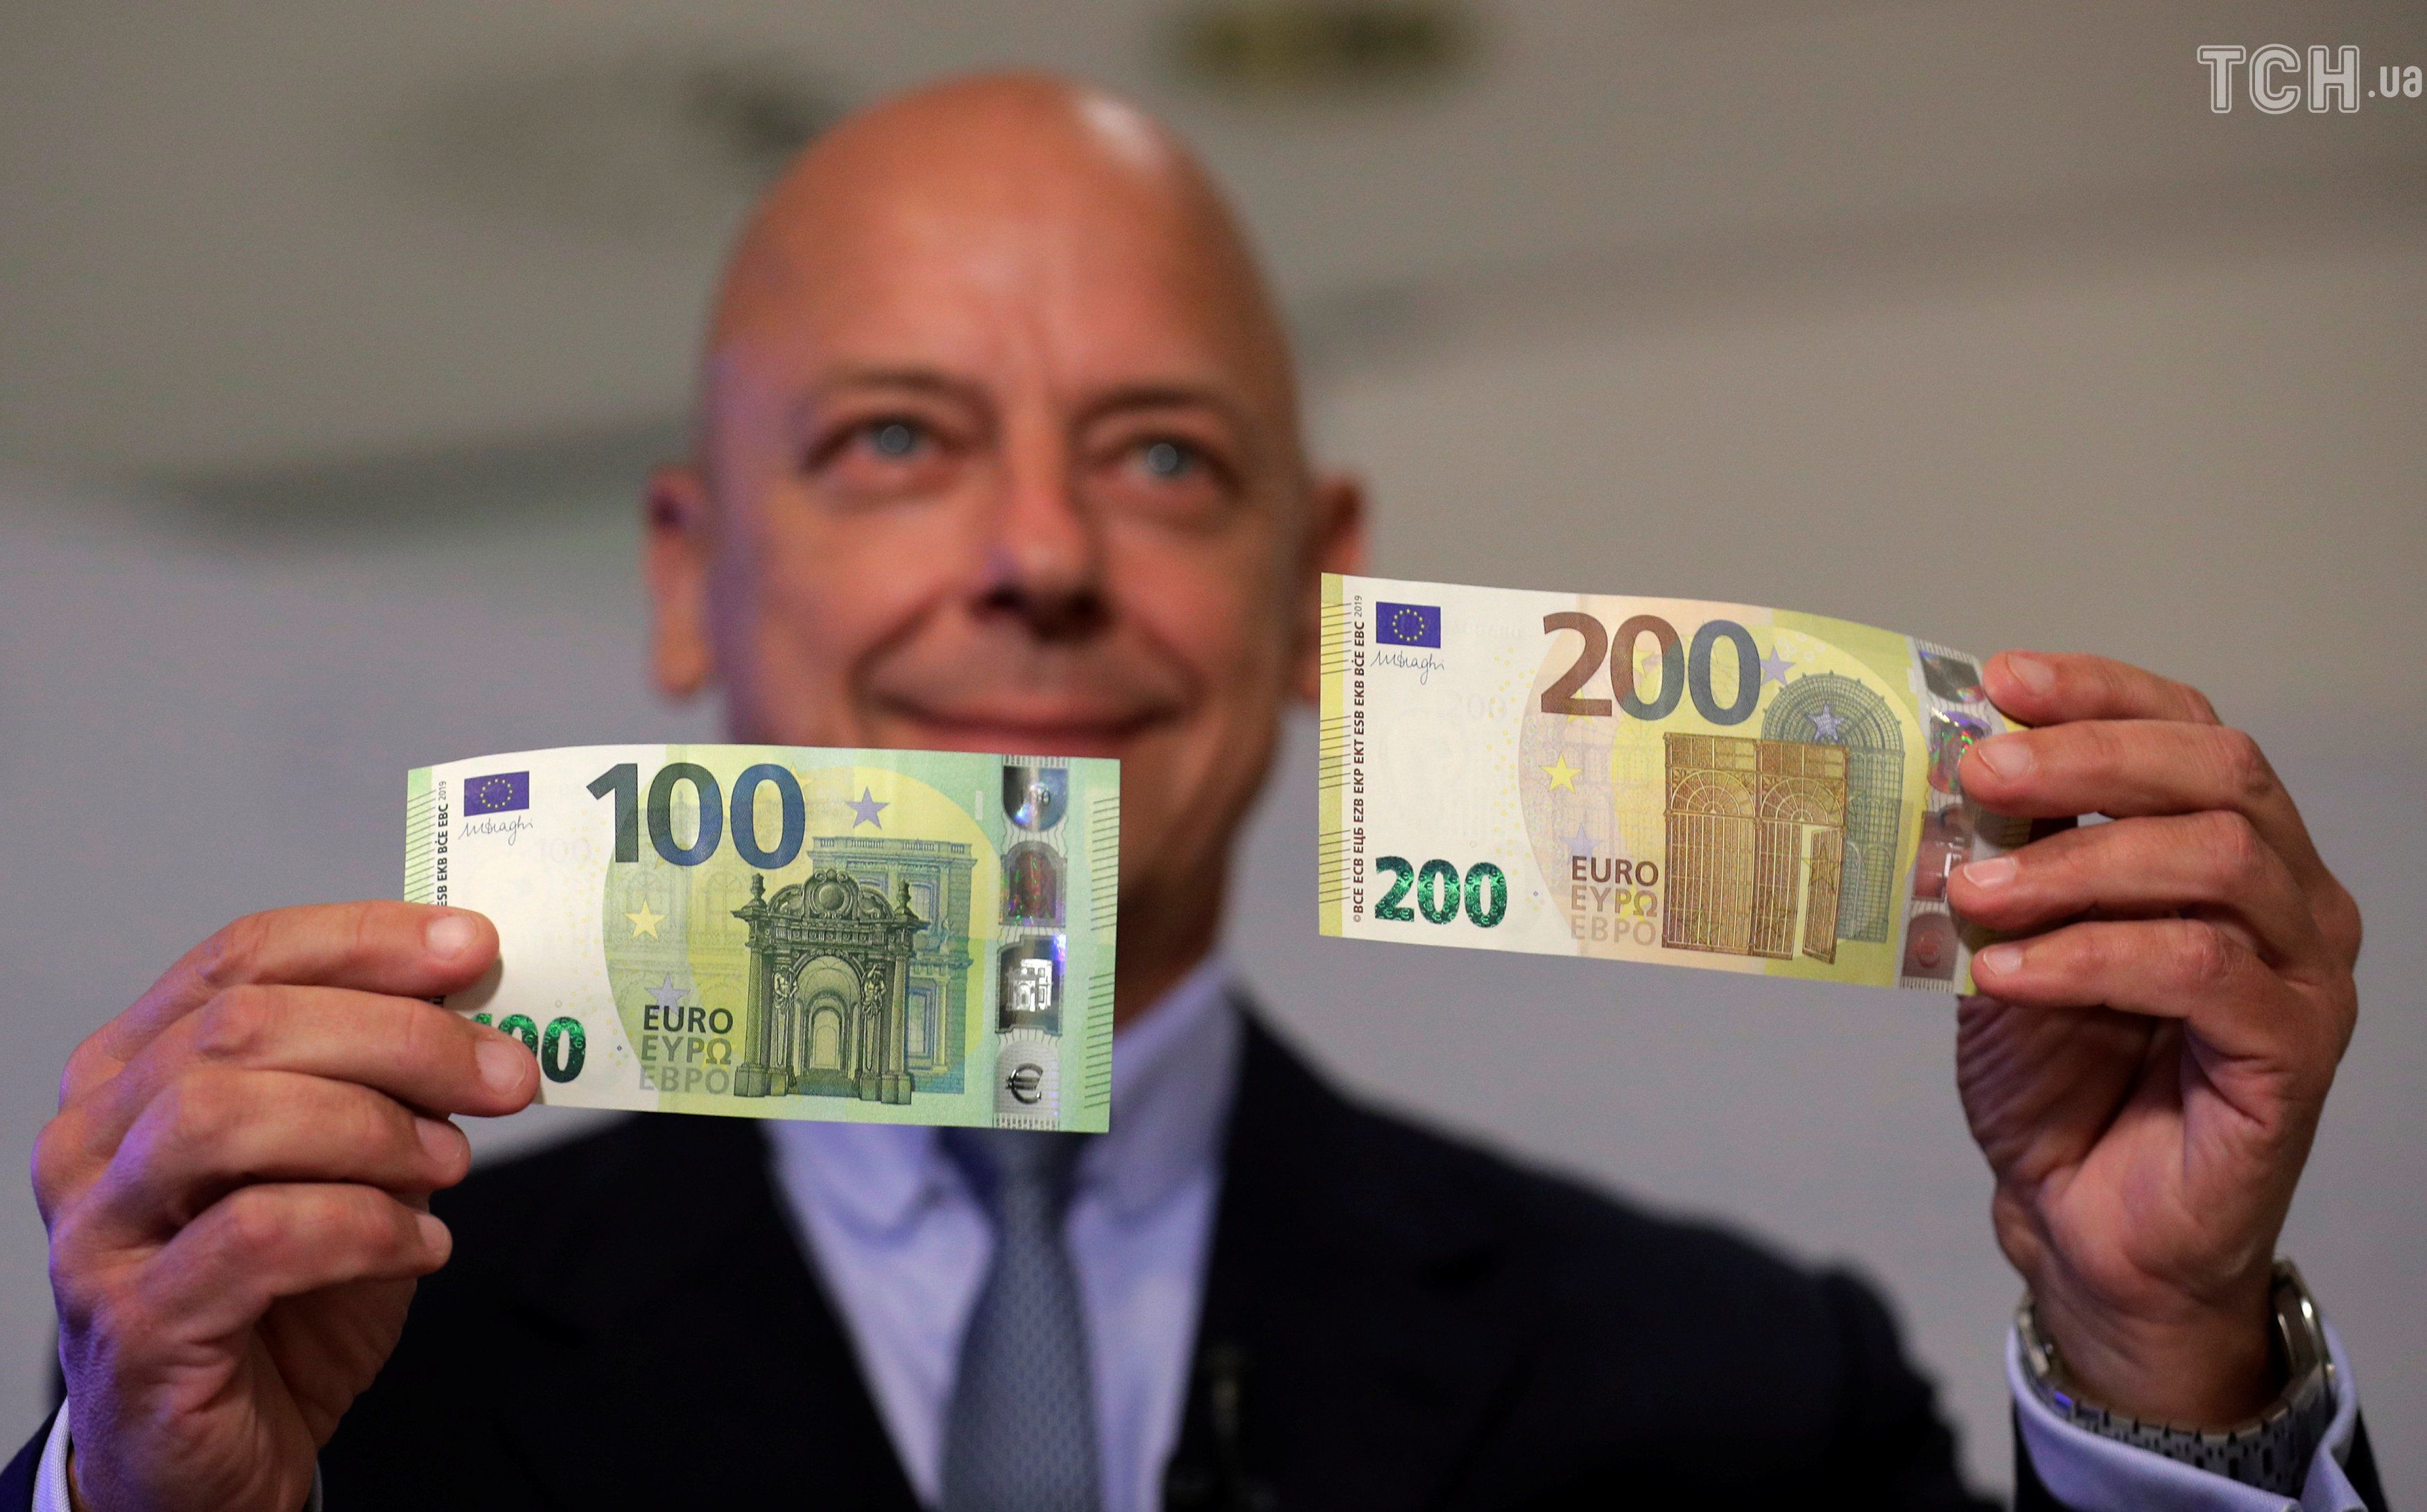 Образцы евро купюр. Евро банкноты номинал 200. Новая купюра 100 евро. Купюра 200 евро. Новый евро банкноты 100 и 200.